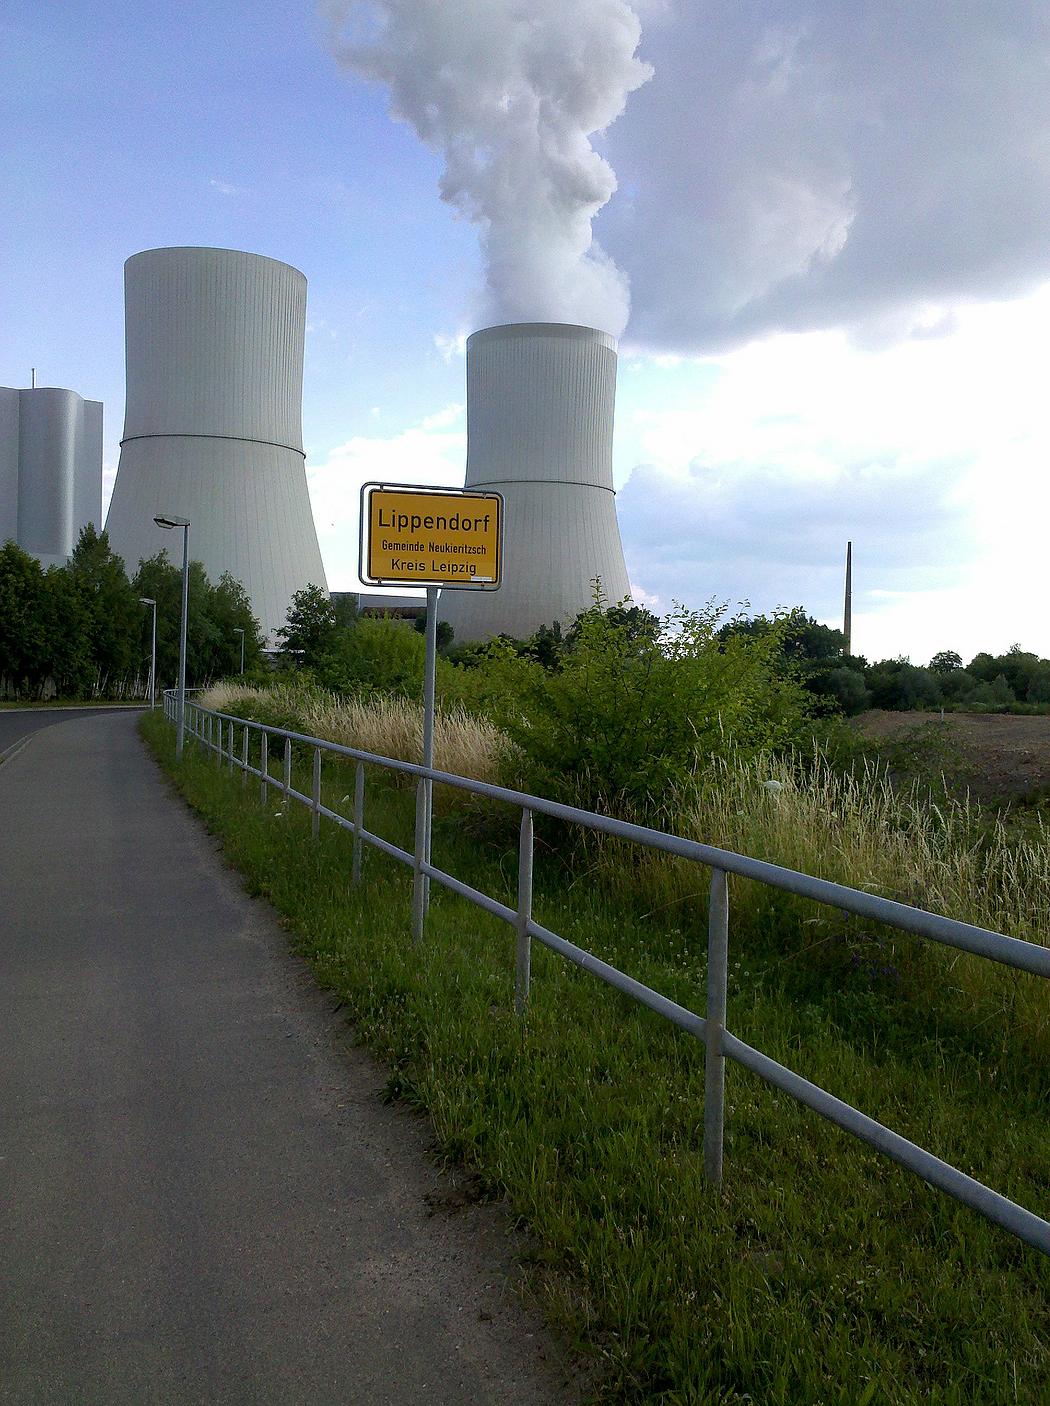 Ortsschild von Lippendorf im Kreis Leipzig. Im Hintergrund die rauchenden Kühltürme des örtlichen Braunkohlekraftwerks.